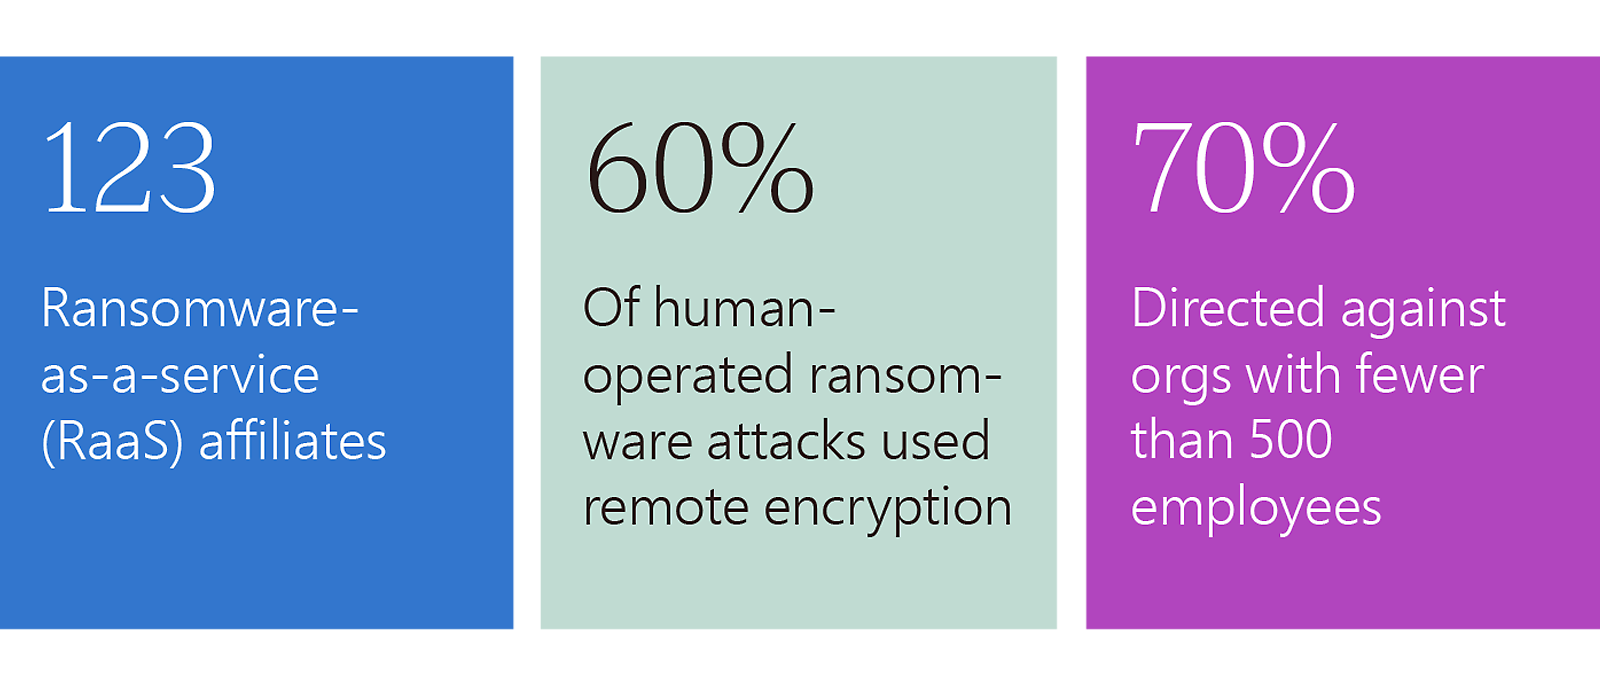 Statistici ransomware: 123 de afiliați RaaS, 60% utilizează criptarea la distanță, 70% vizează <500 de angajați